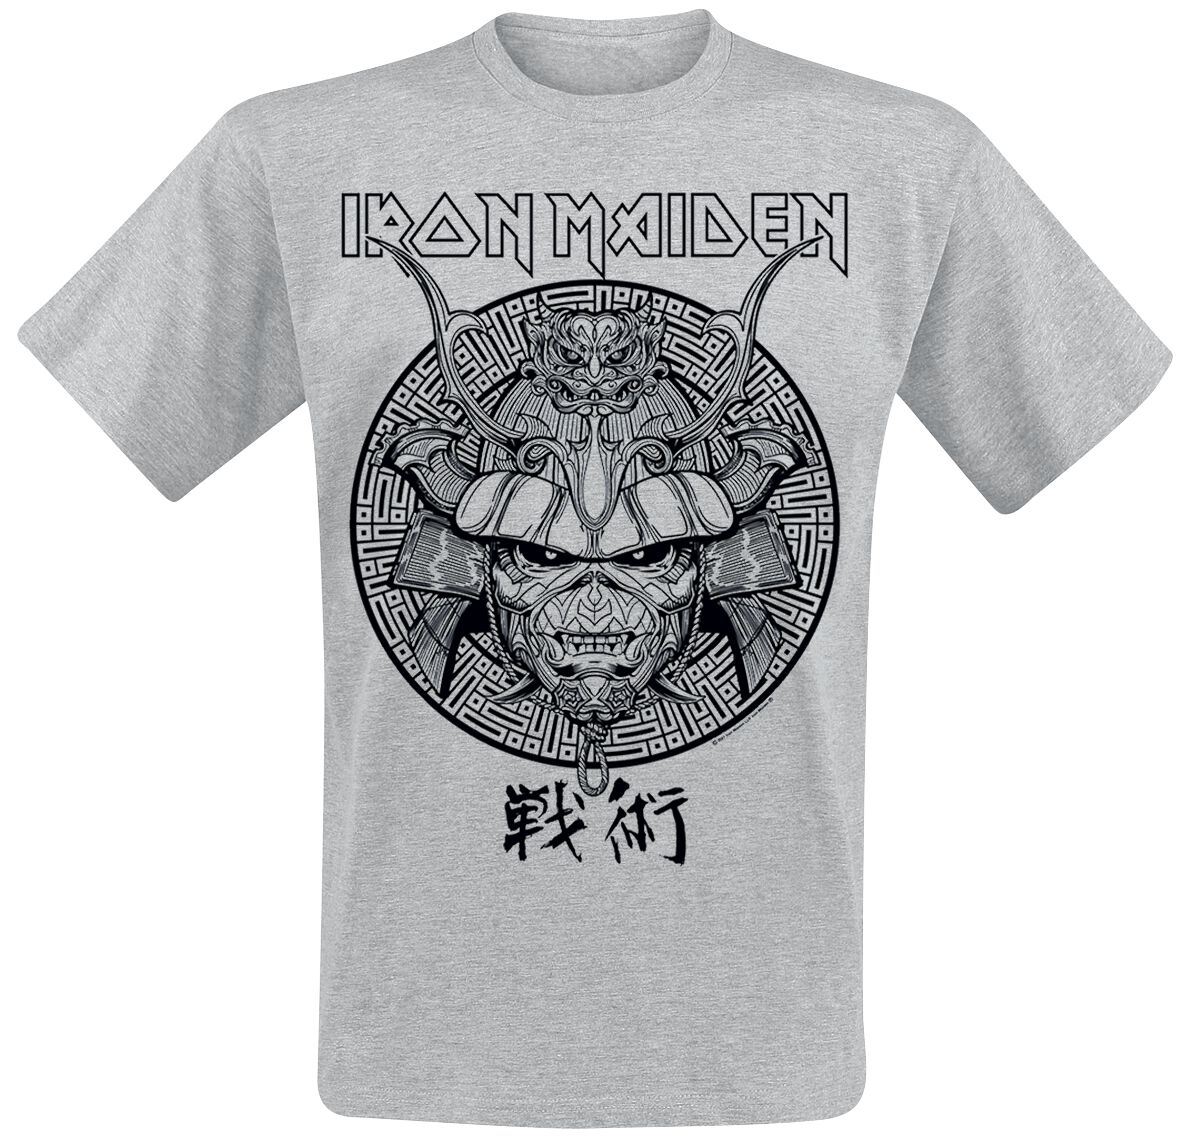 Iron Maiden T-Shirt - Samurai Eddie Black Graphic - S bis XXL - für Männer - Größe M - grau  - Lizenziertes Merchandise!